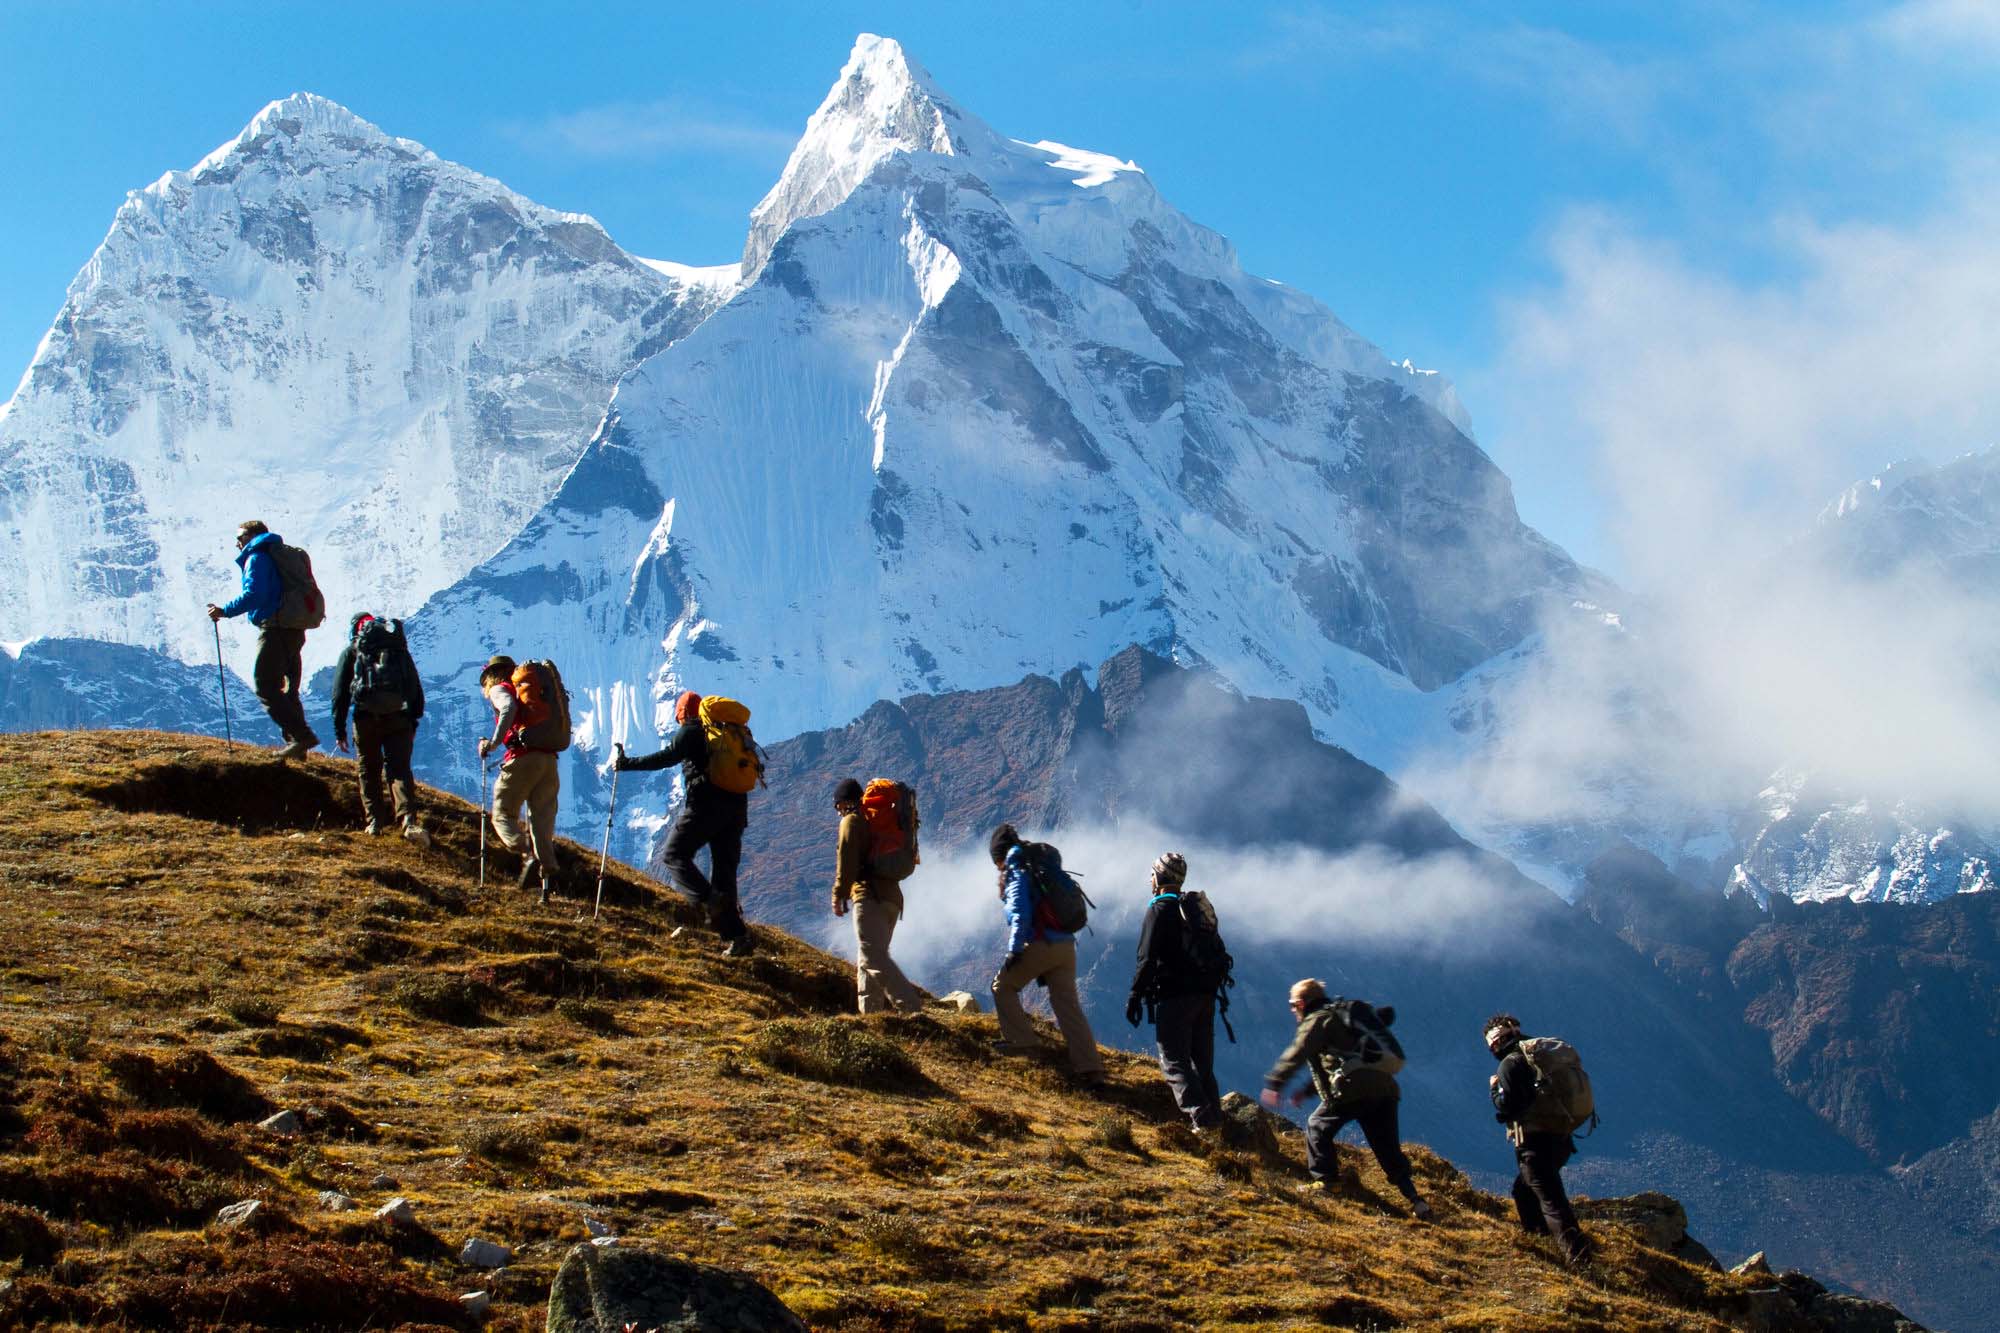 Journey team. Гималаи Аннапурна треккинг. Горы Тибет Гималаи трекинг. Непал треккинг. Треккинг к Эвересту.